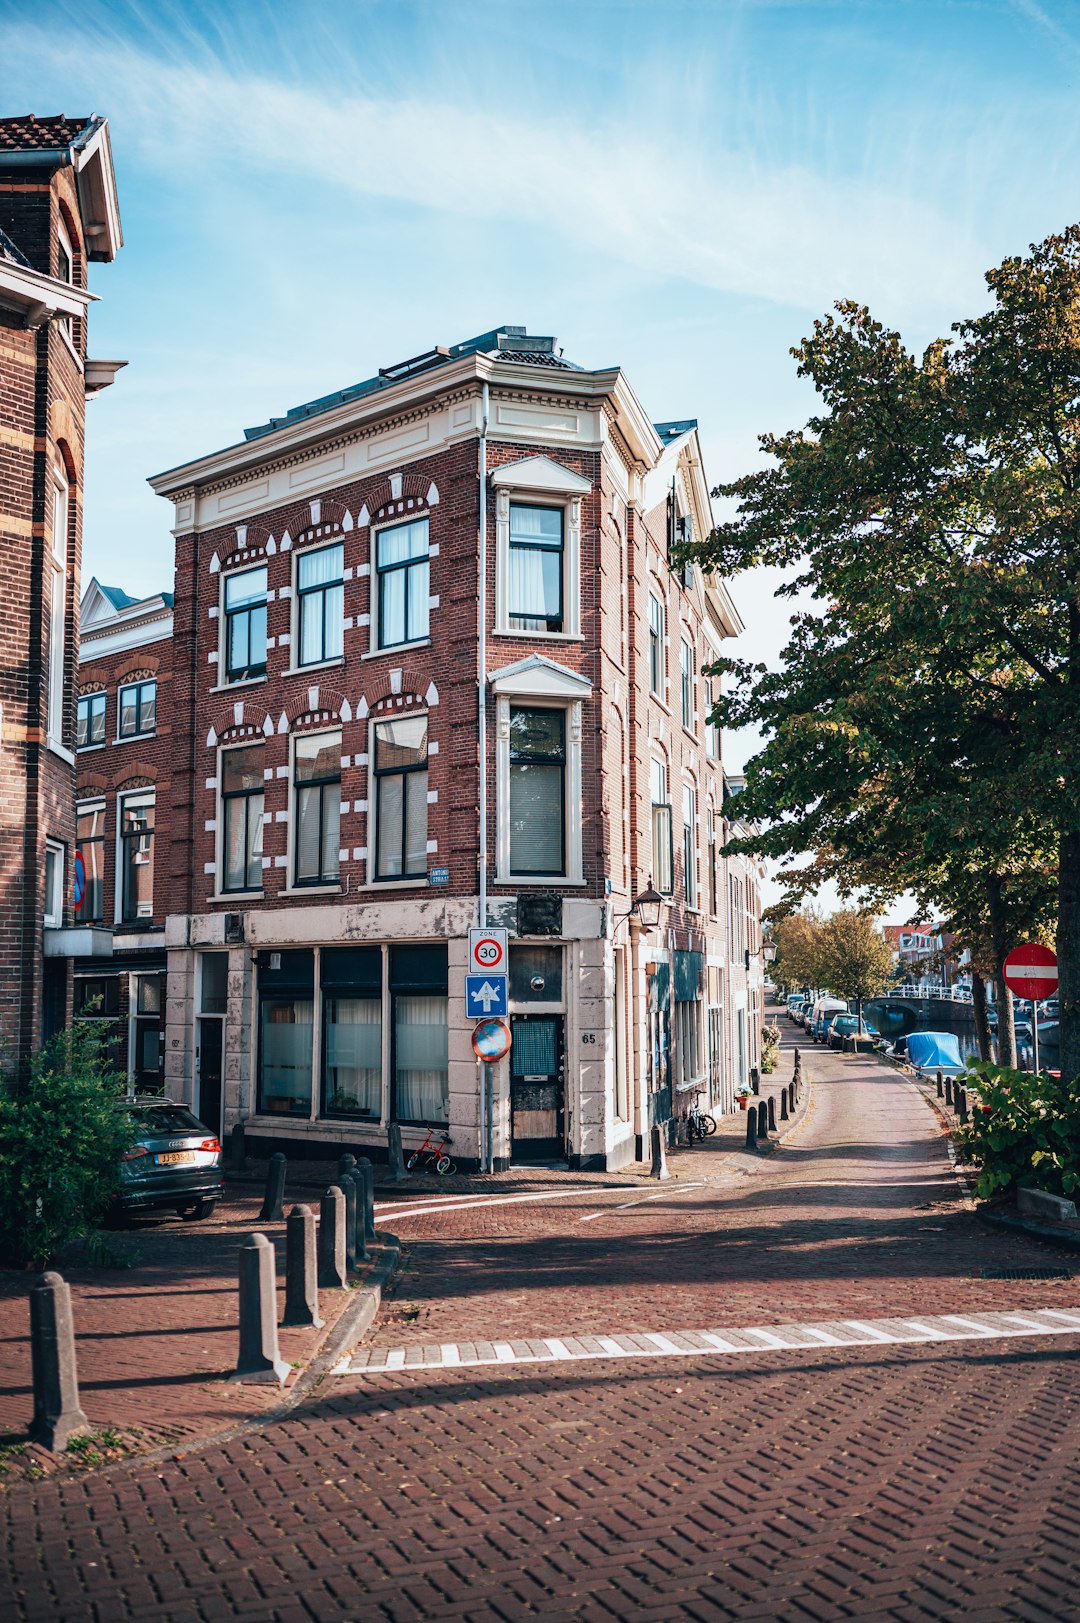 Town photo spot Haarlem Den Haag